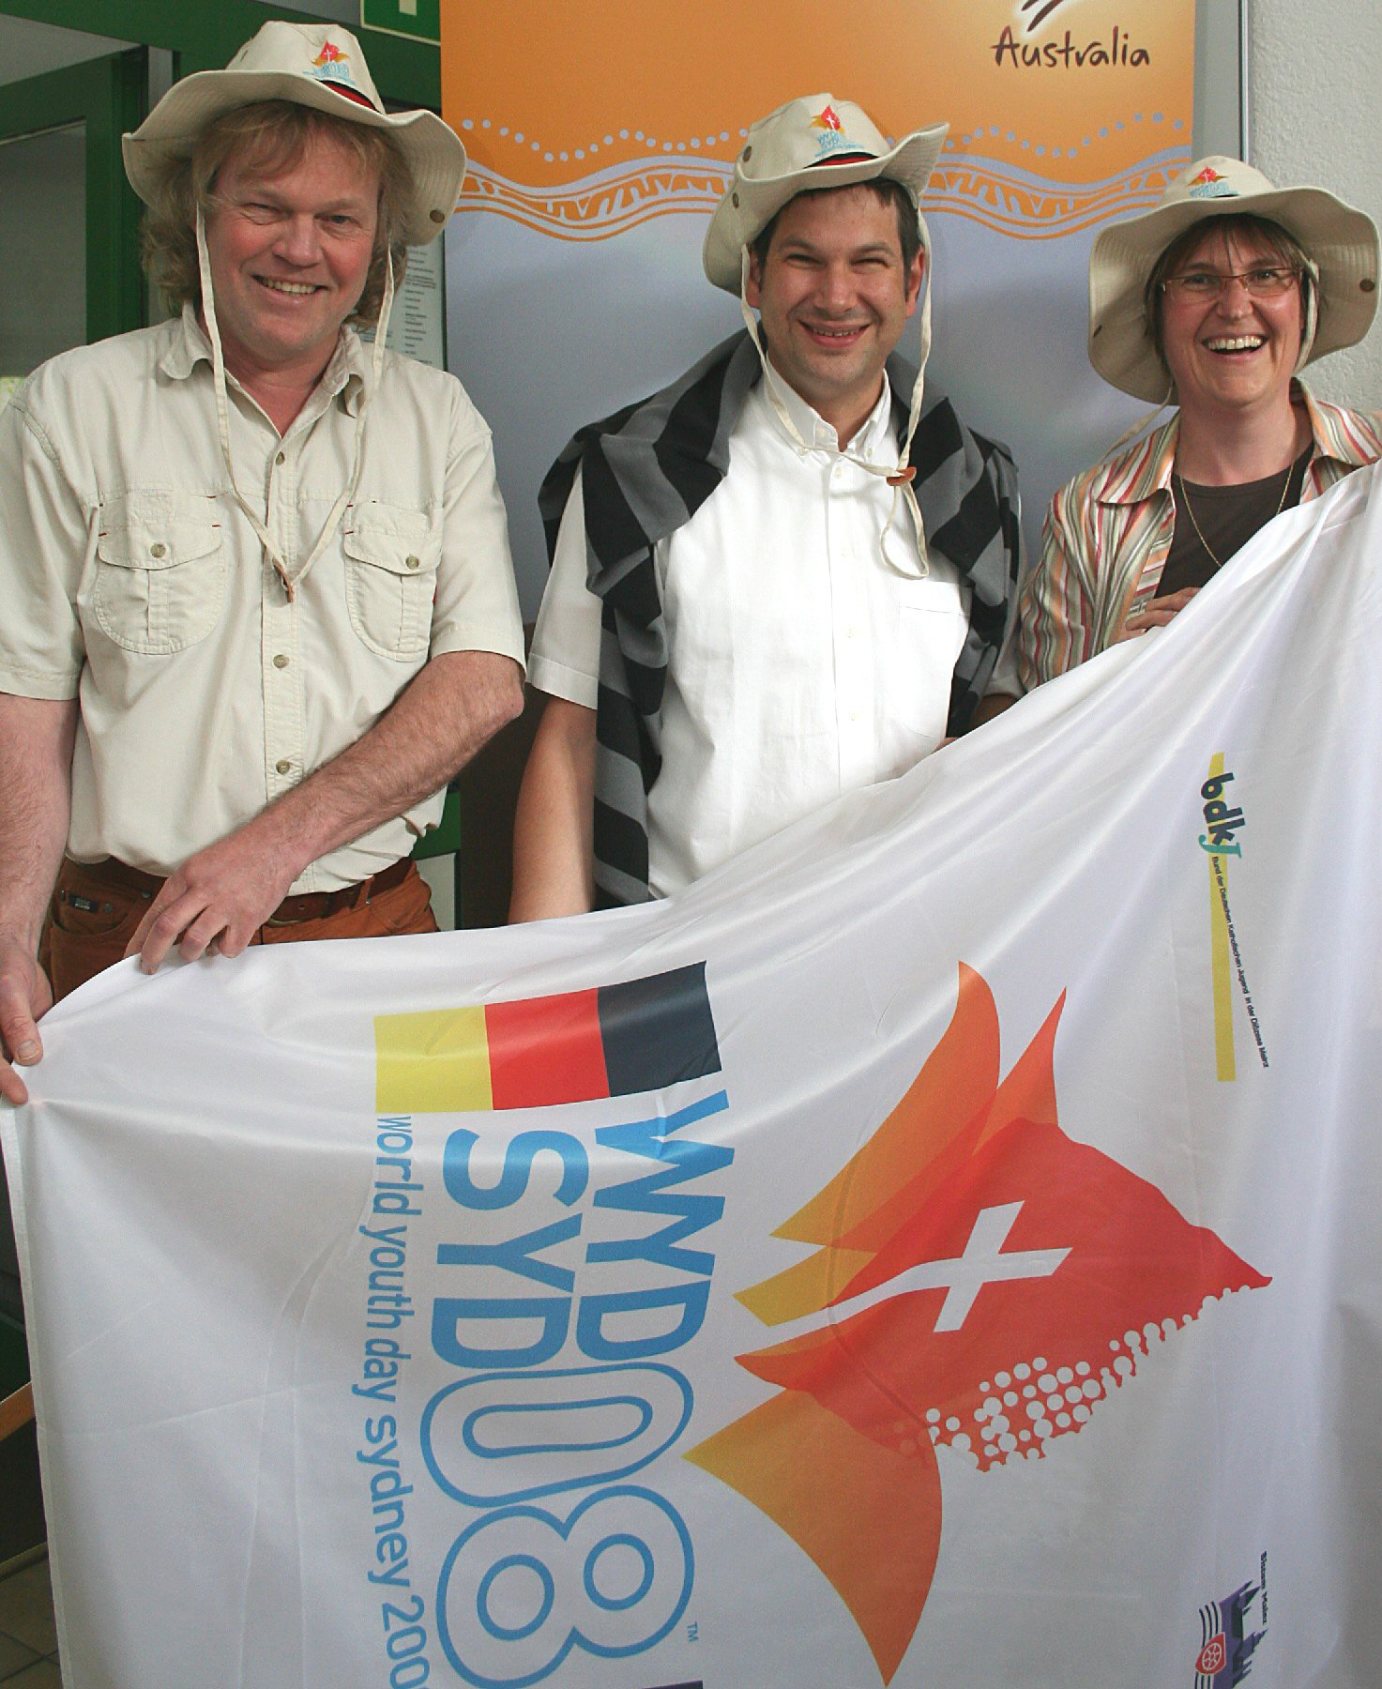 Mainz, 24.6.2008: Begleiten die Mainzer BDKJ-Gruppe nach Australien: (v.l.) Andreas Belz, Markus W. Konrad und Barbara Wolf-Gröninger (c) Bistum Mainz / Matschak